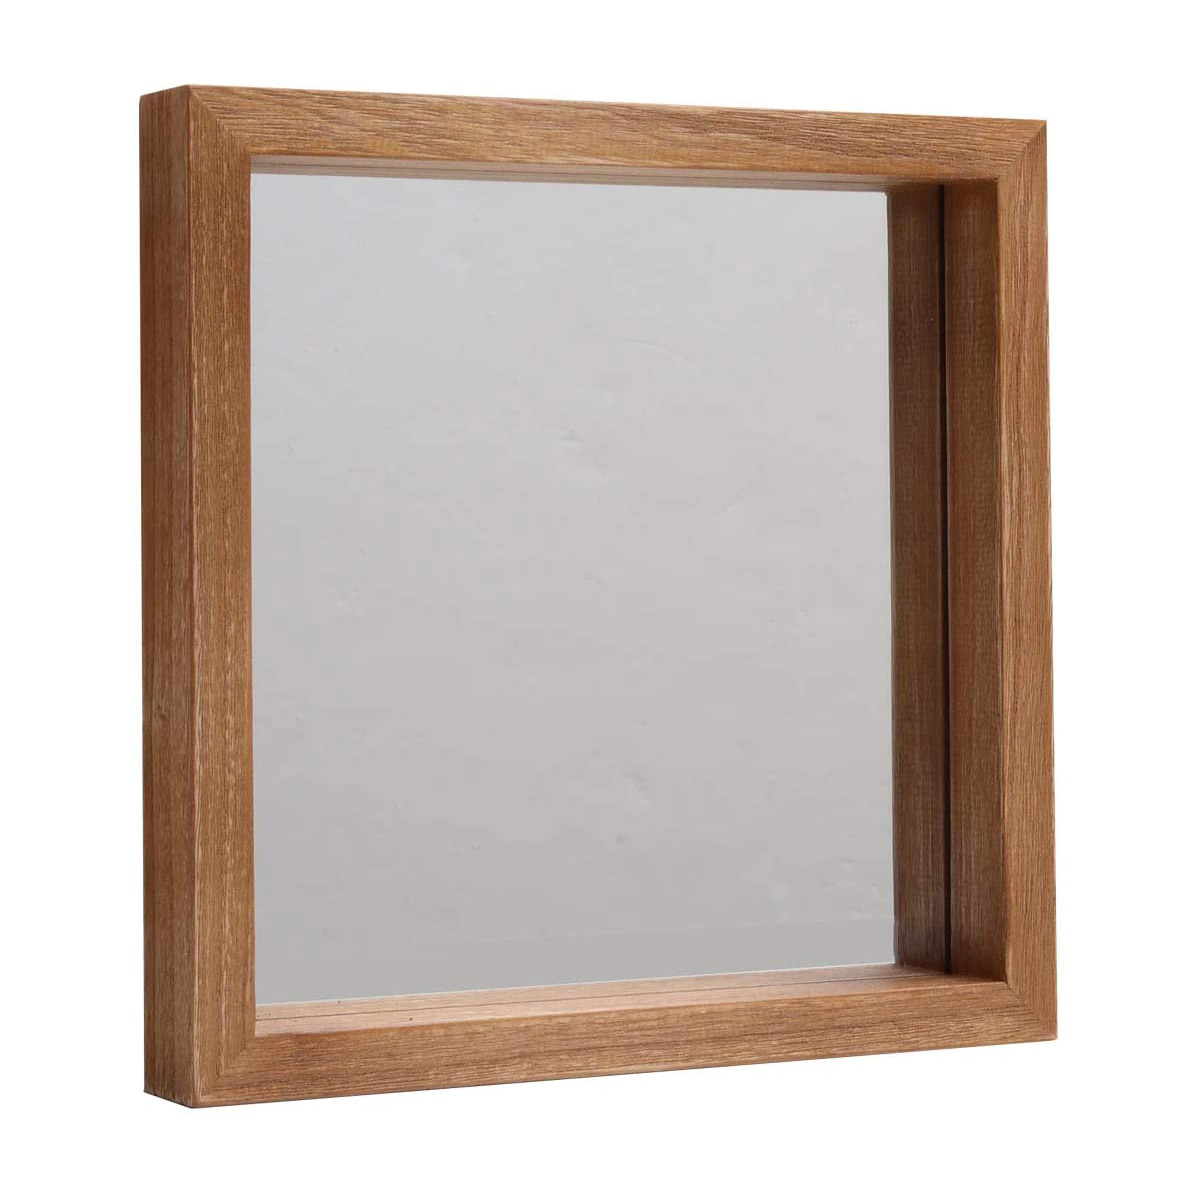 ミラー 壁掛けミラー 鏡 壁掛け おしゃれ 木製 幅30 ボックス 北欧 